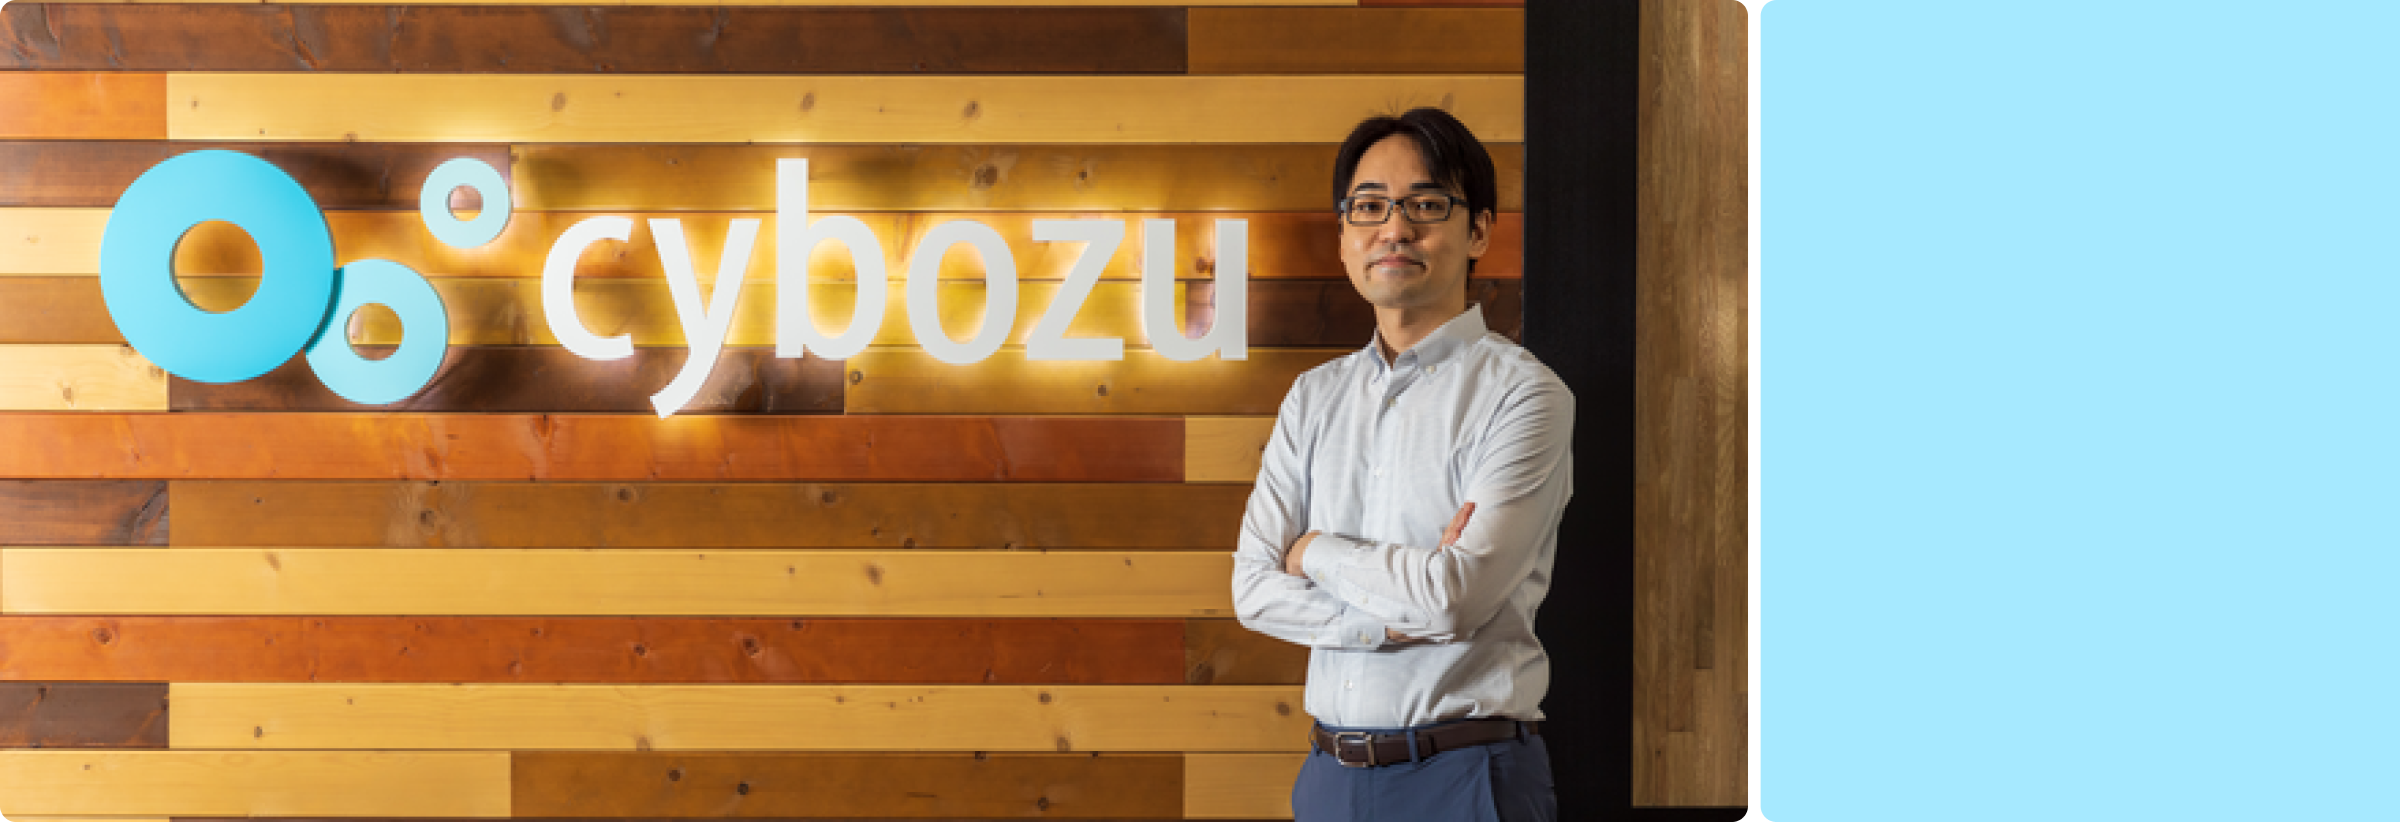 Shuichi Suzuki standing in front of Cybozu sign